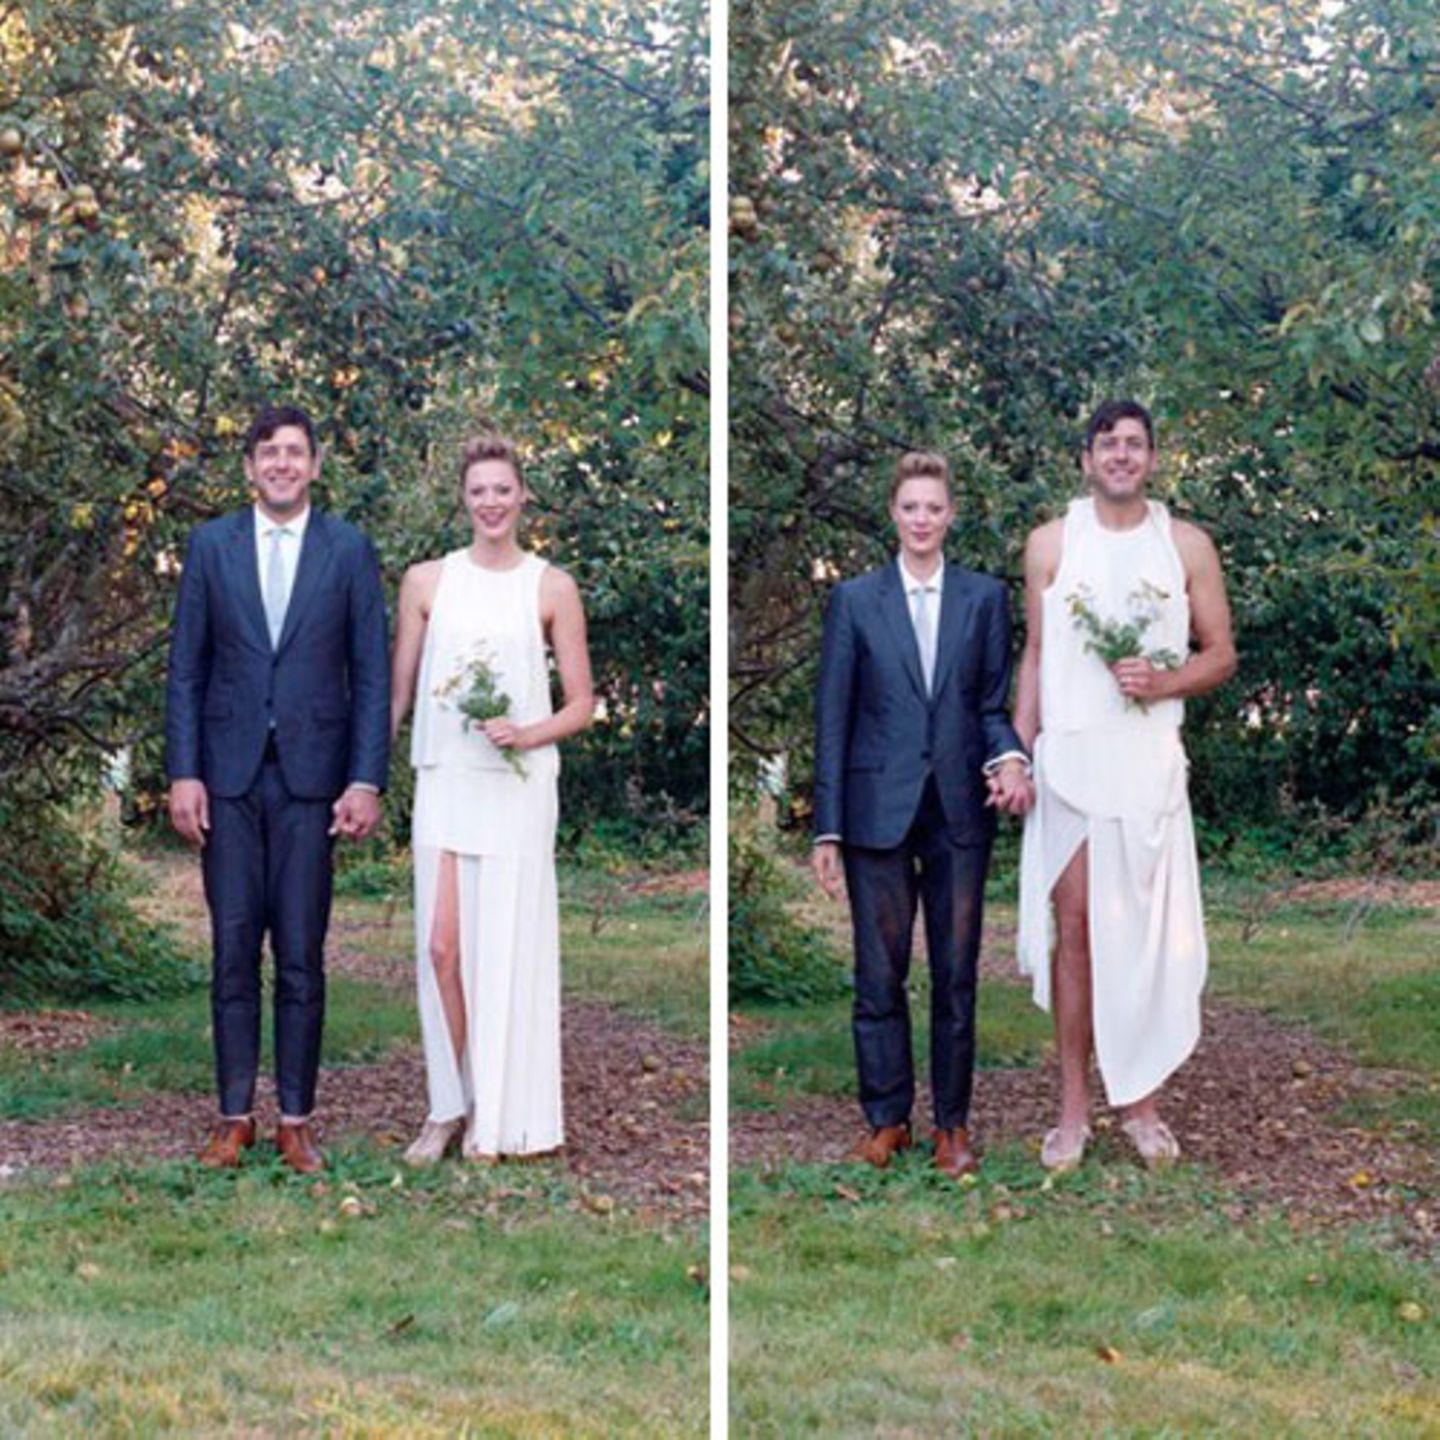 Wir gehören zusammen: Sich in der Kleidung des anderen fotografieren zu lassen, drückt auch Verbundenheit aus. Bei diesem fröhlichen Brautpaar wird das besonders deutlich.